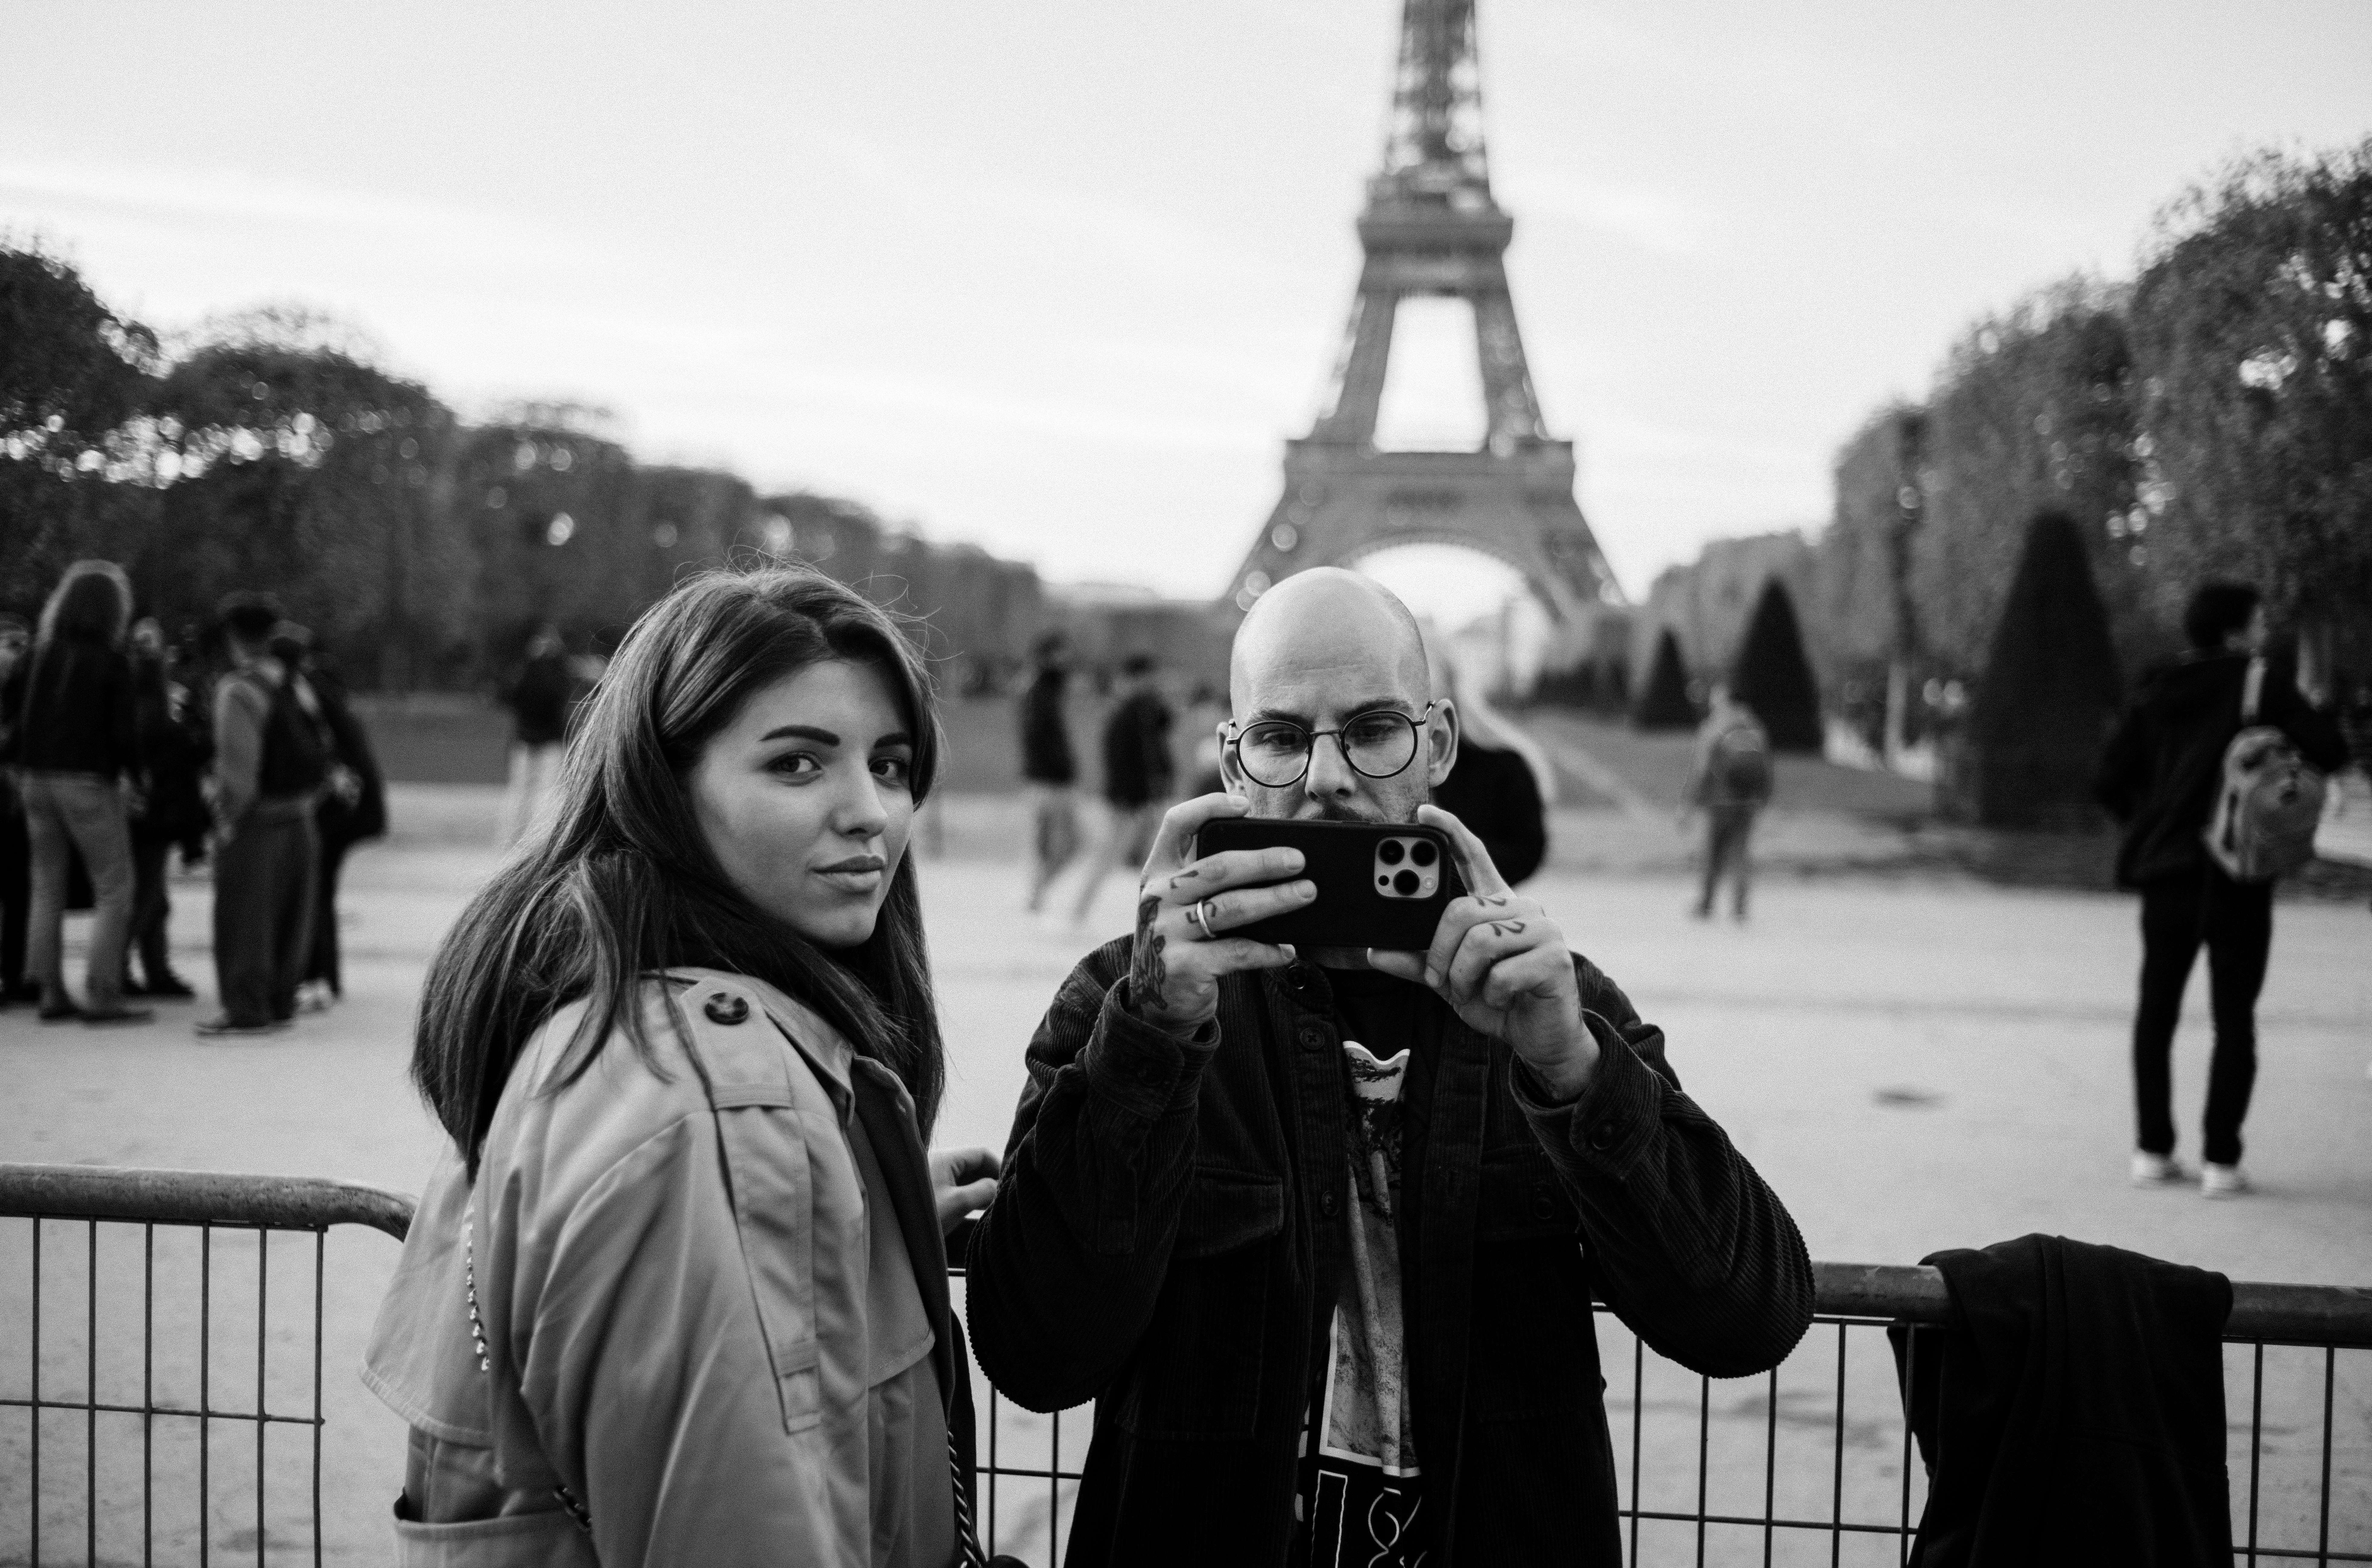  Велина Стефанова и брачният партньор ѝ Димитри Стефанов - селфи край айфеловата кула в Париж - изявление 